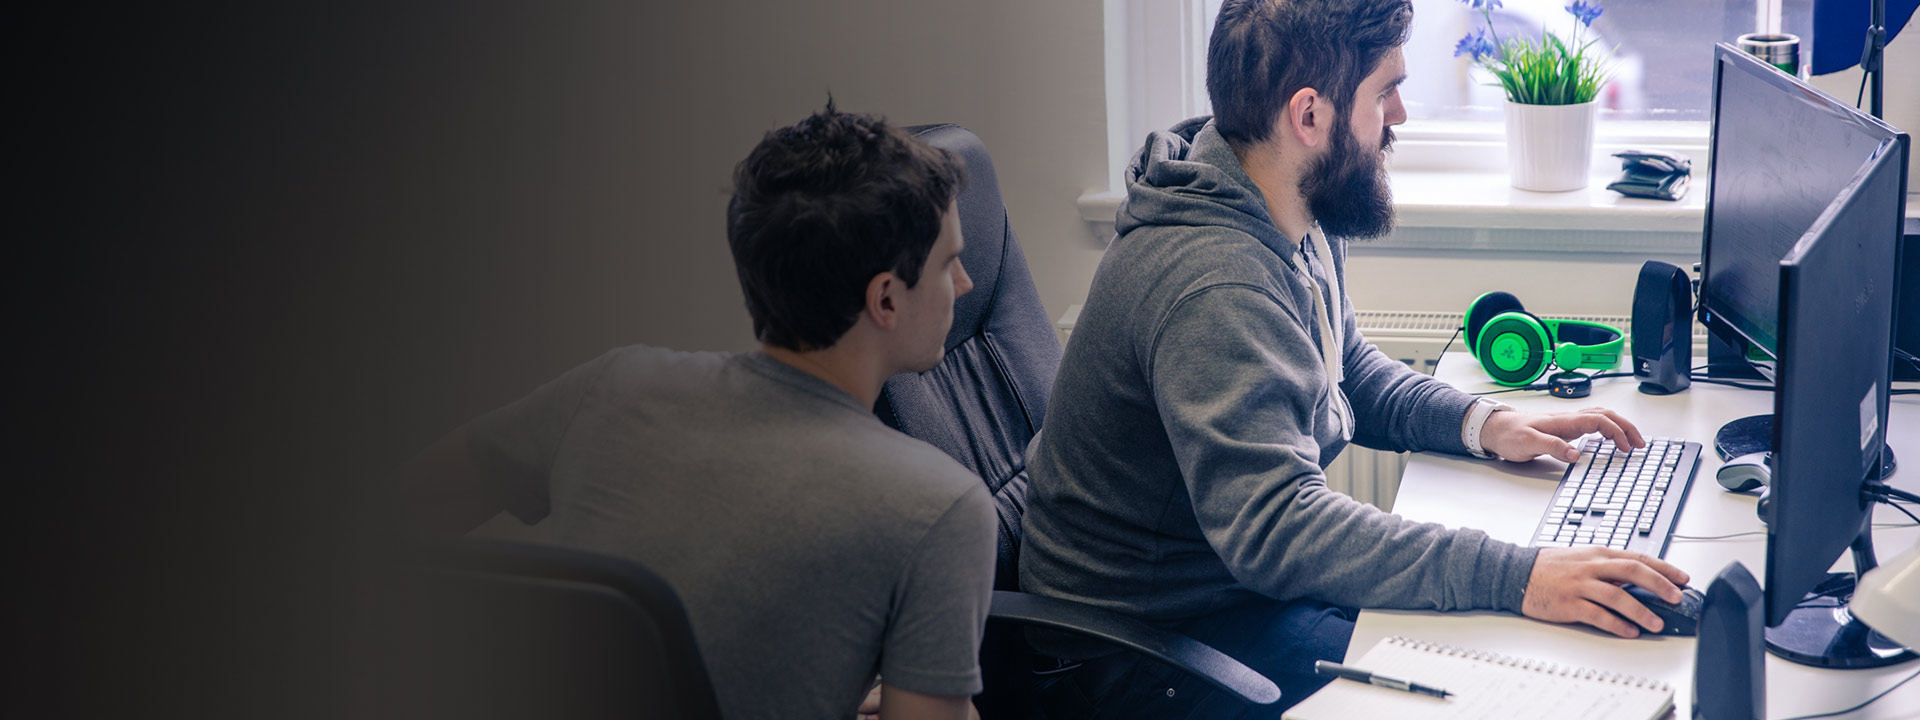 Mies ja nainen istuvat työpöytiensä ääressä kehittämässä Xbox-peliä ID at Xbox -ohjelman puitteissa